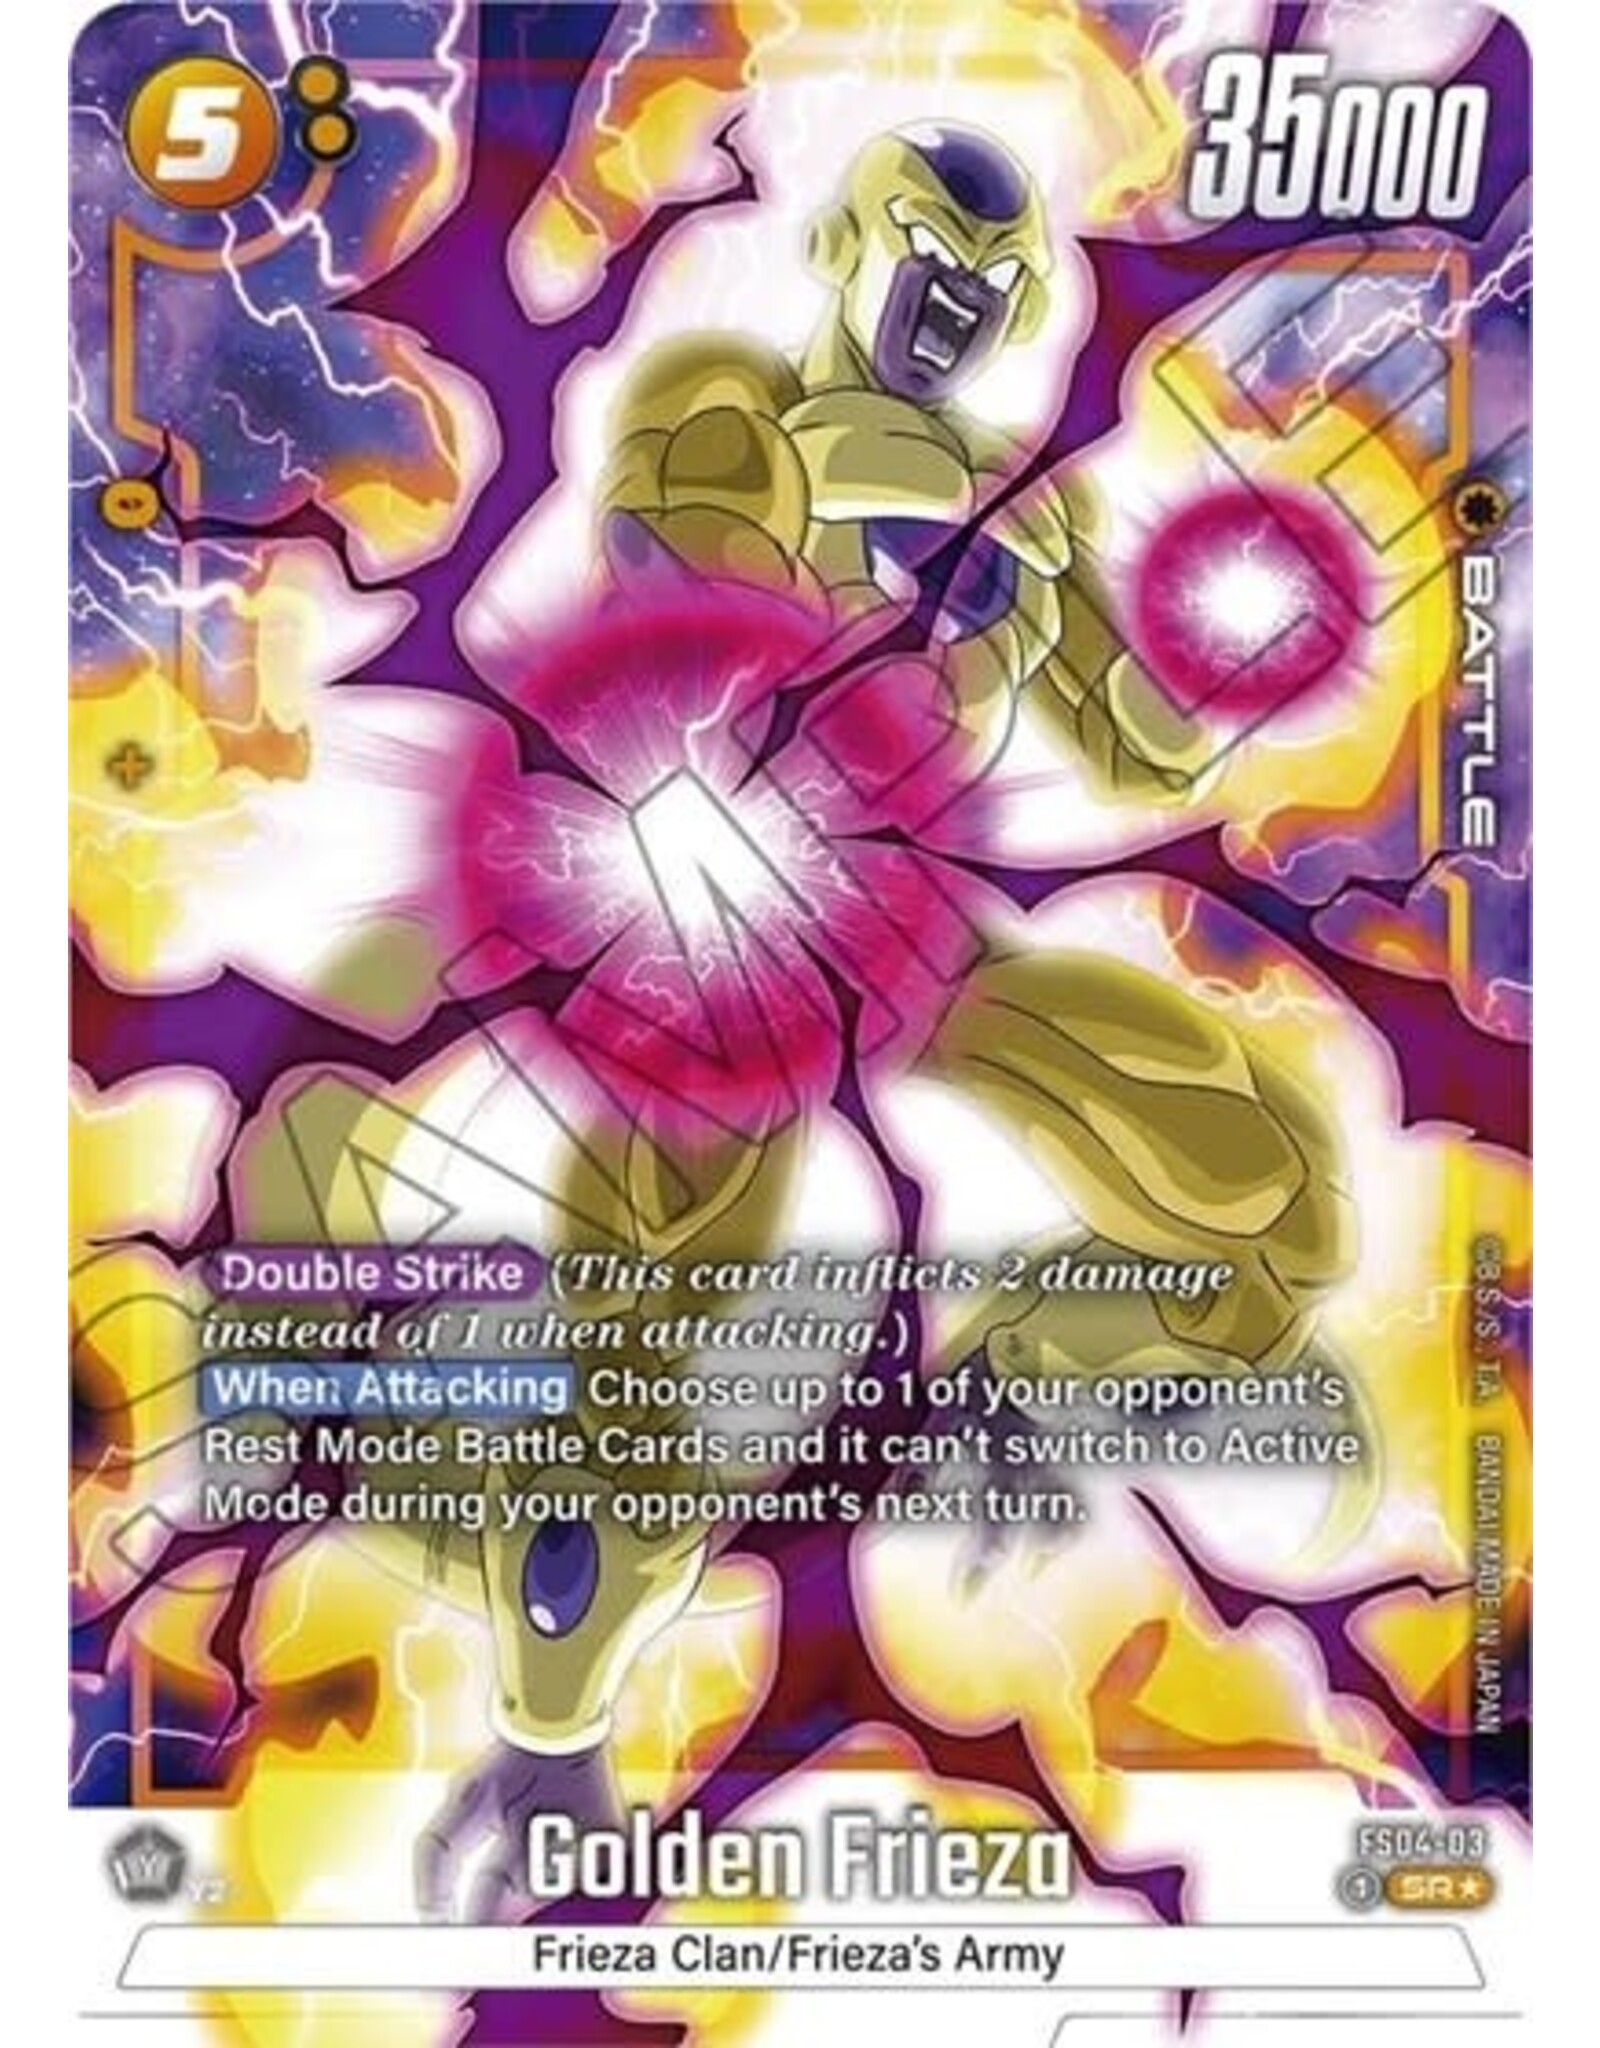 Bandai Golden Frieza (Bonus Pack Alternate Art) - FS04-03